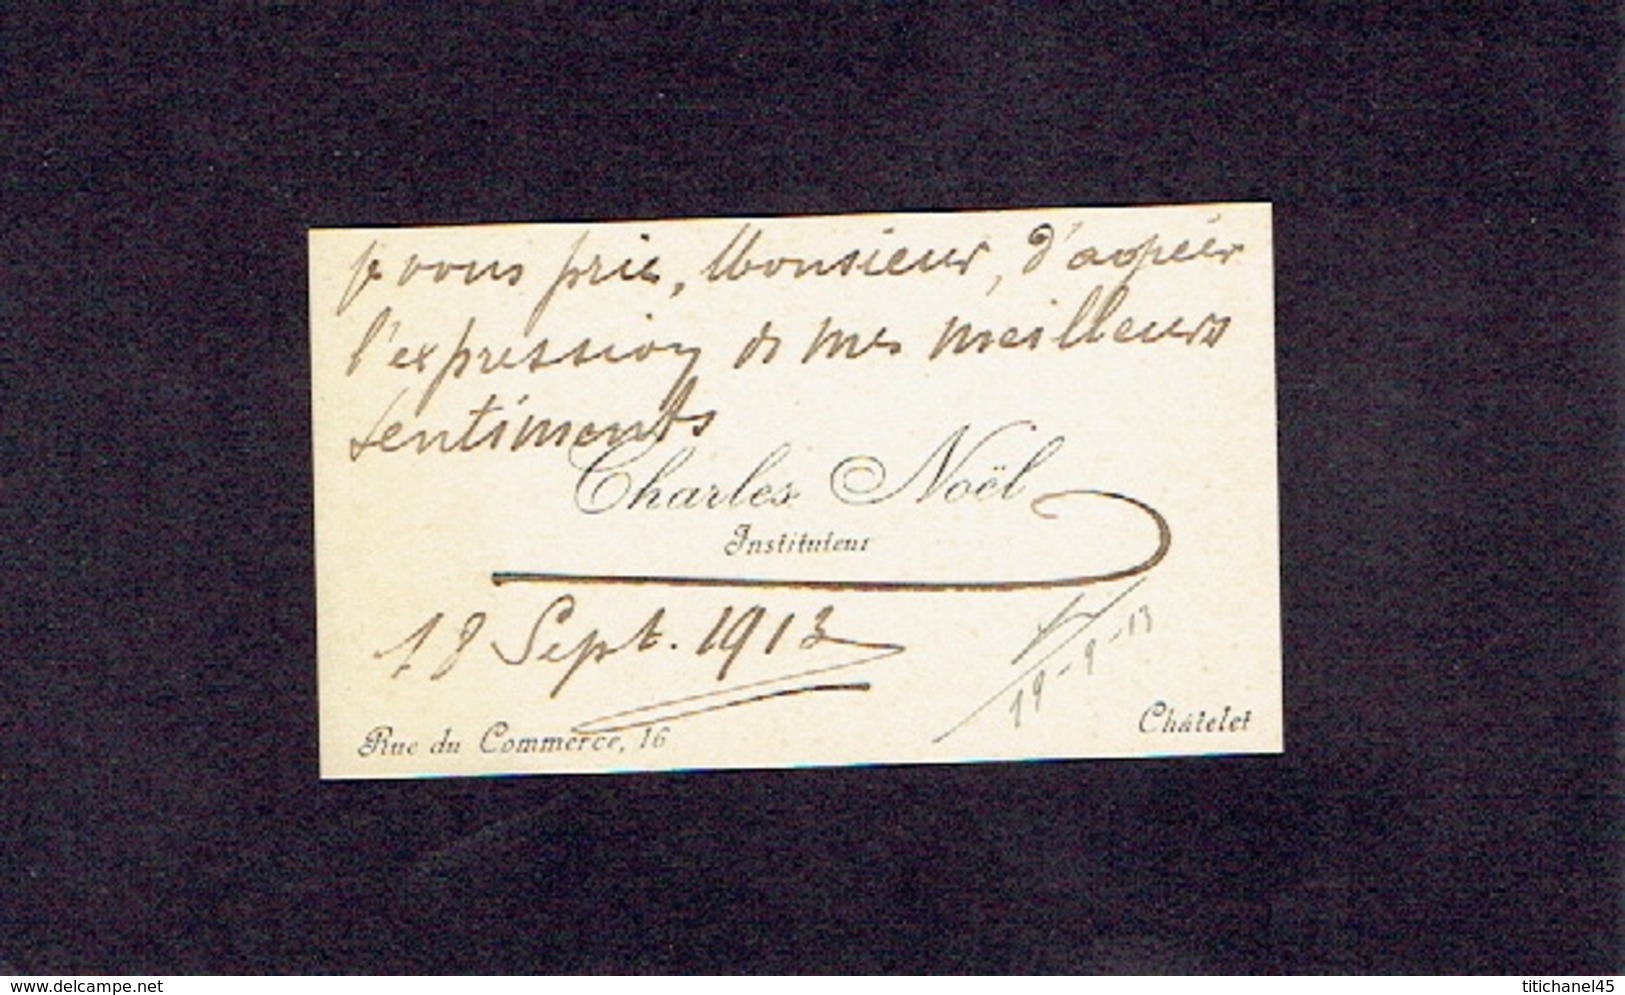 CHATELET 1913 ANCIENNE CARTE DE VISITE - Charles NOËL - Instituteur - Cartes De Visite